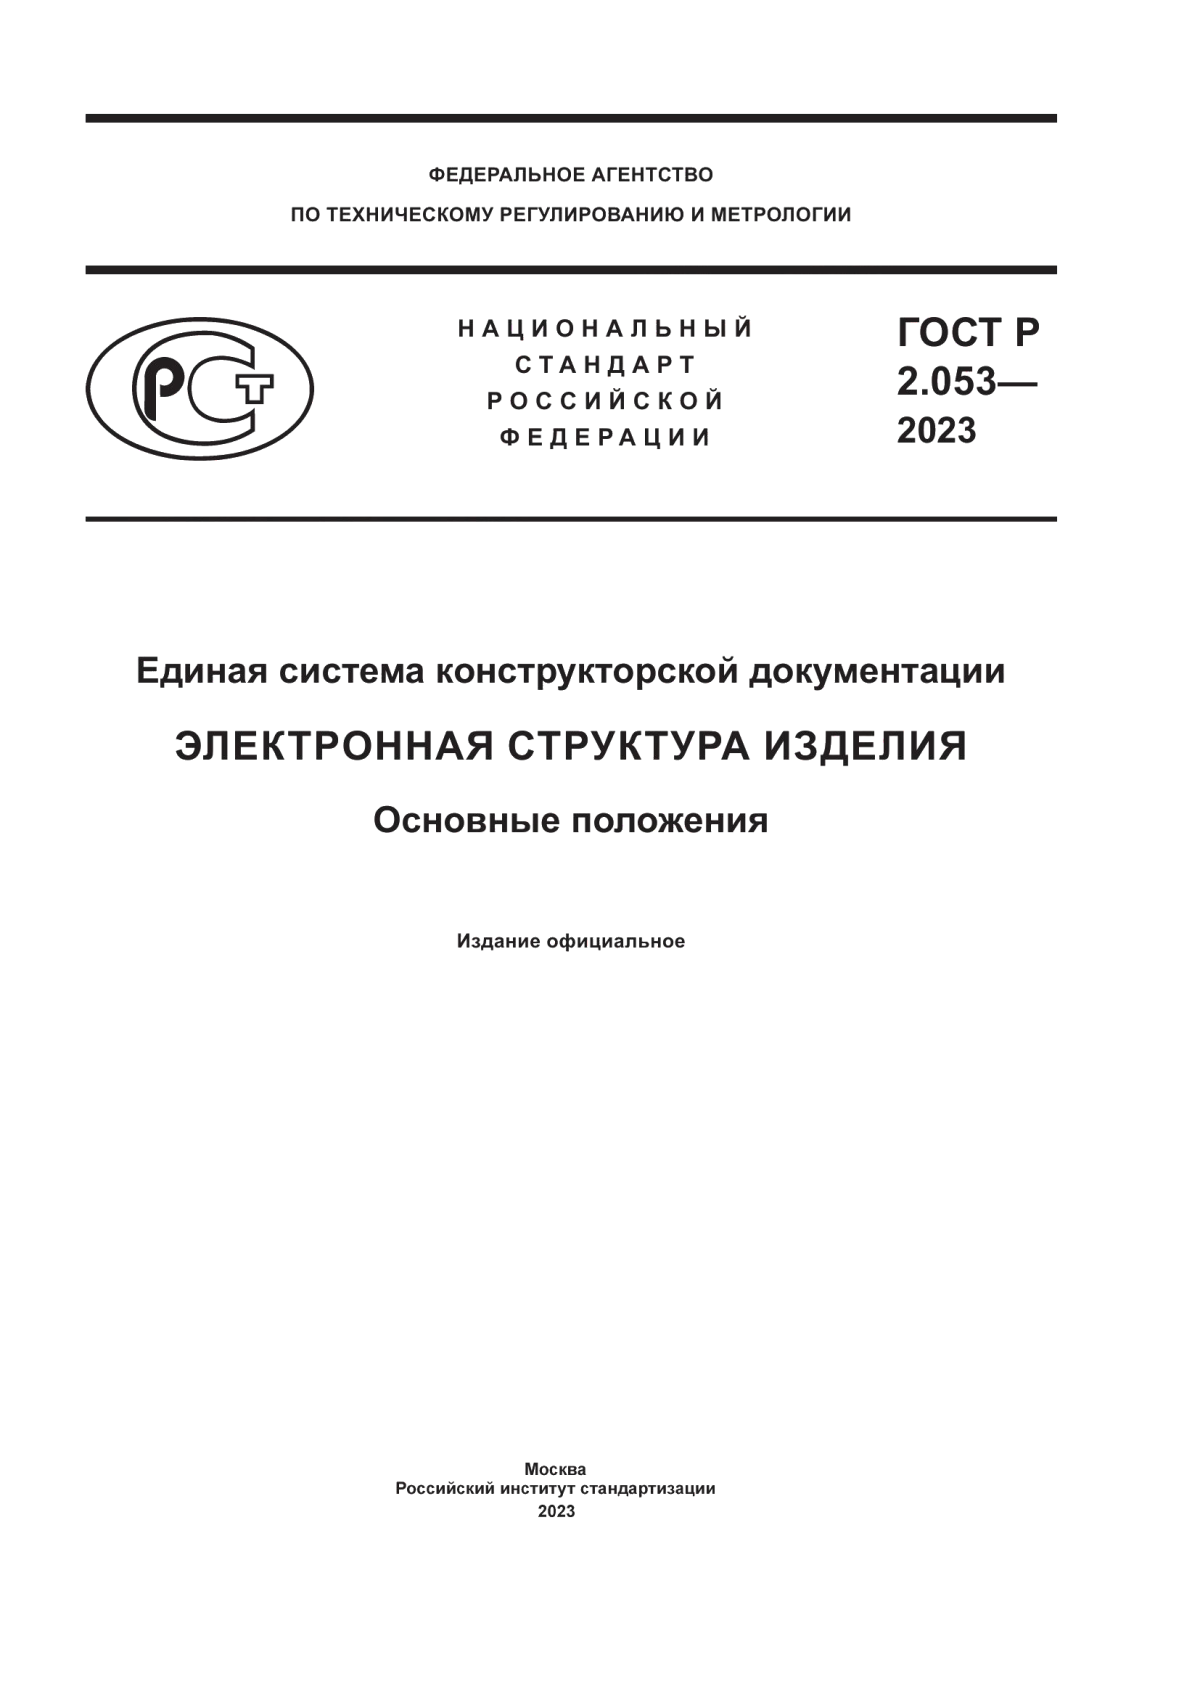 ГОСТ Р 2.053-2023 Единая система конструкторской документации. Электронная структура изделия. Основные положения